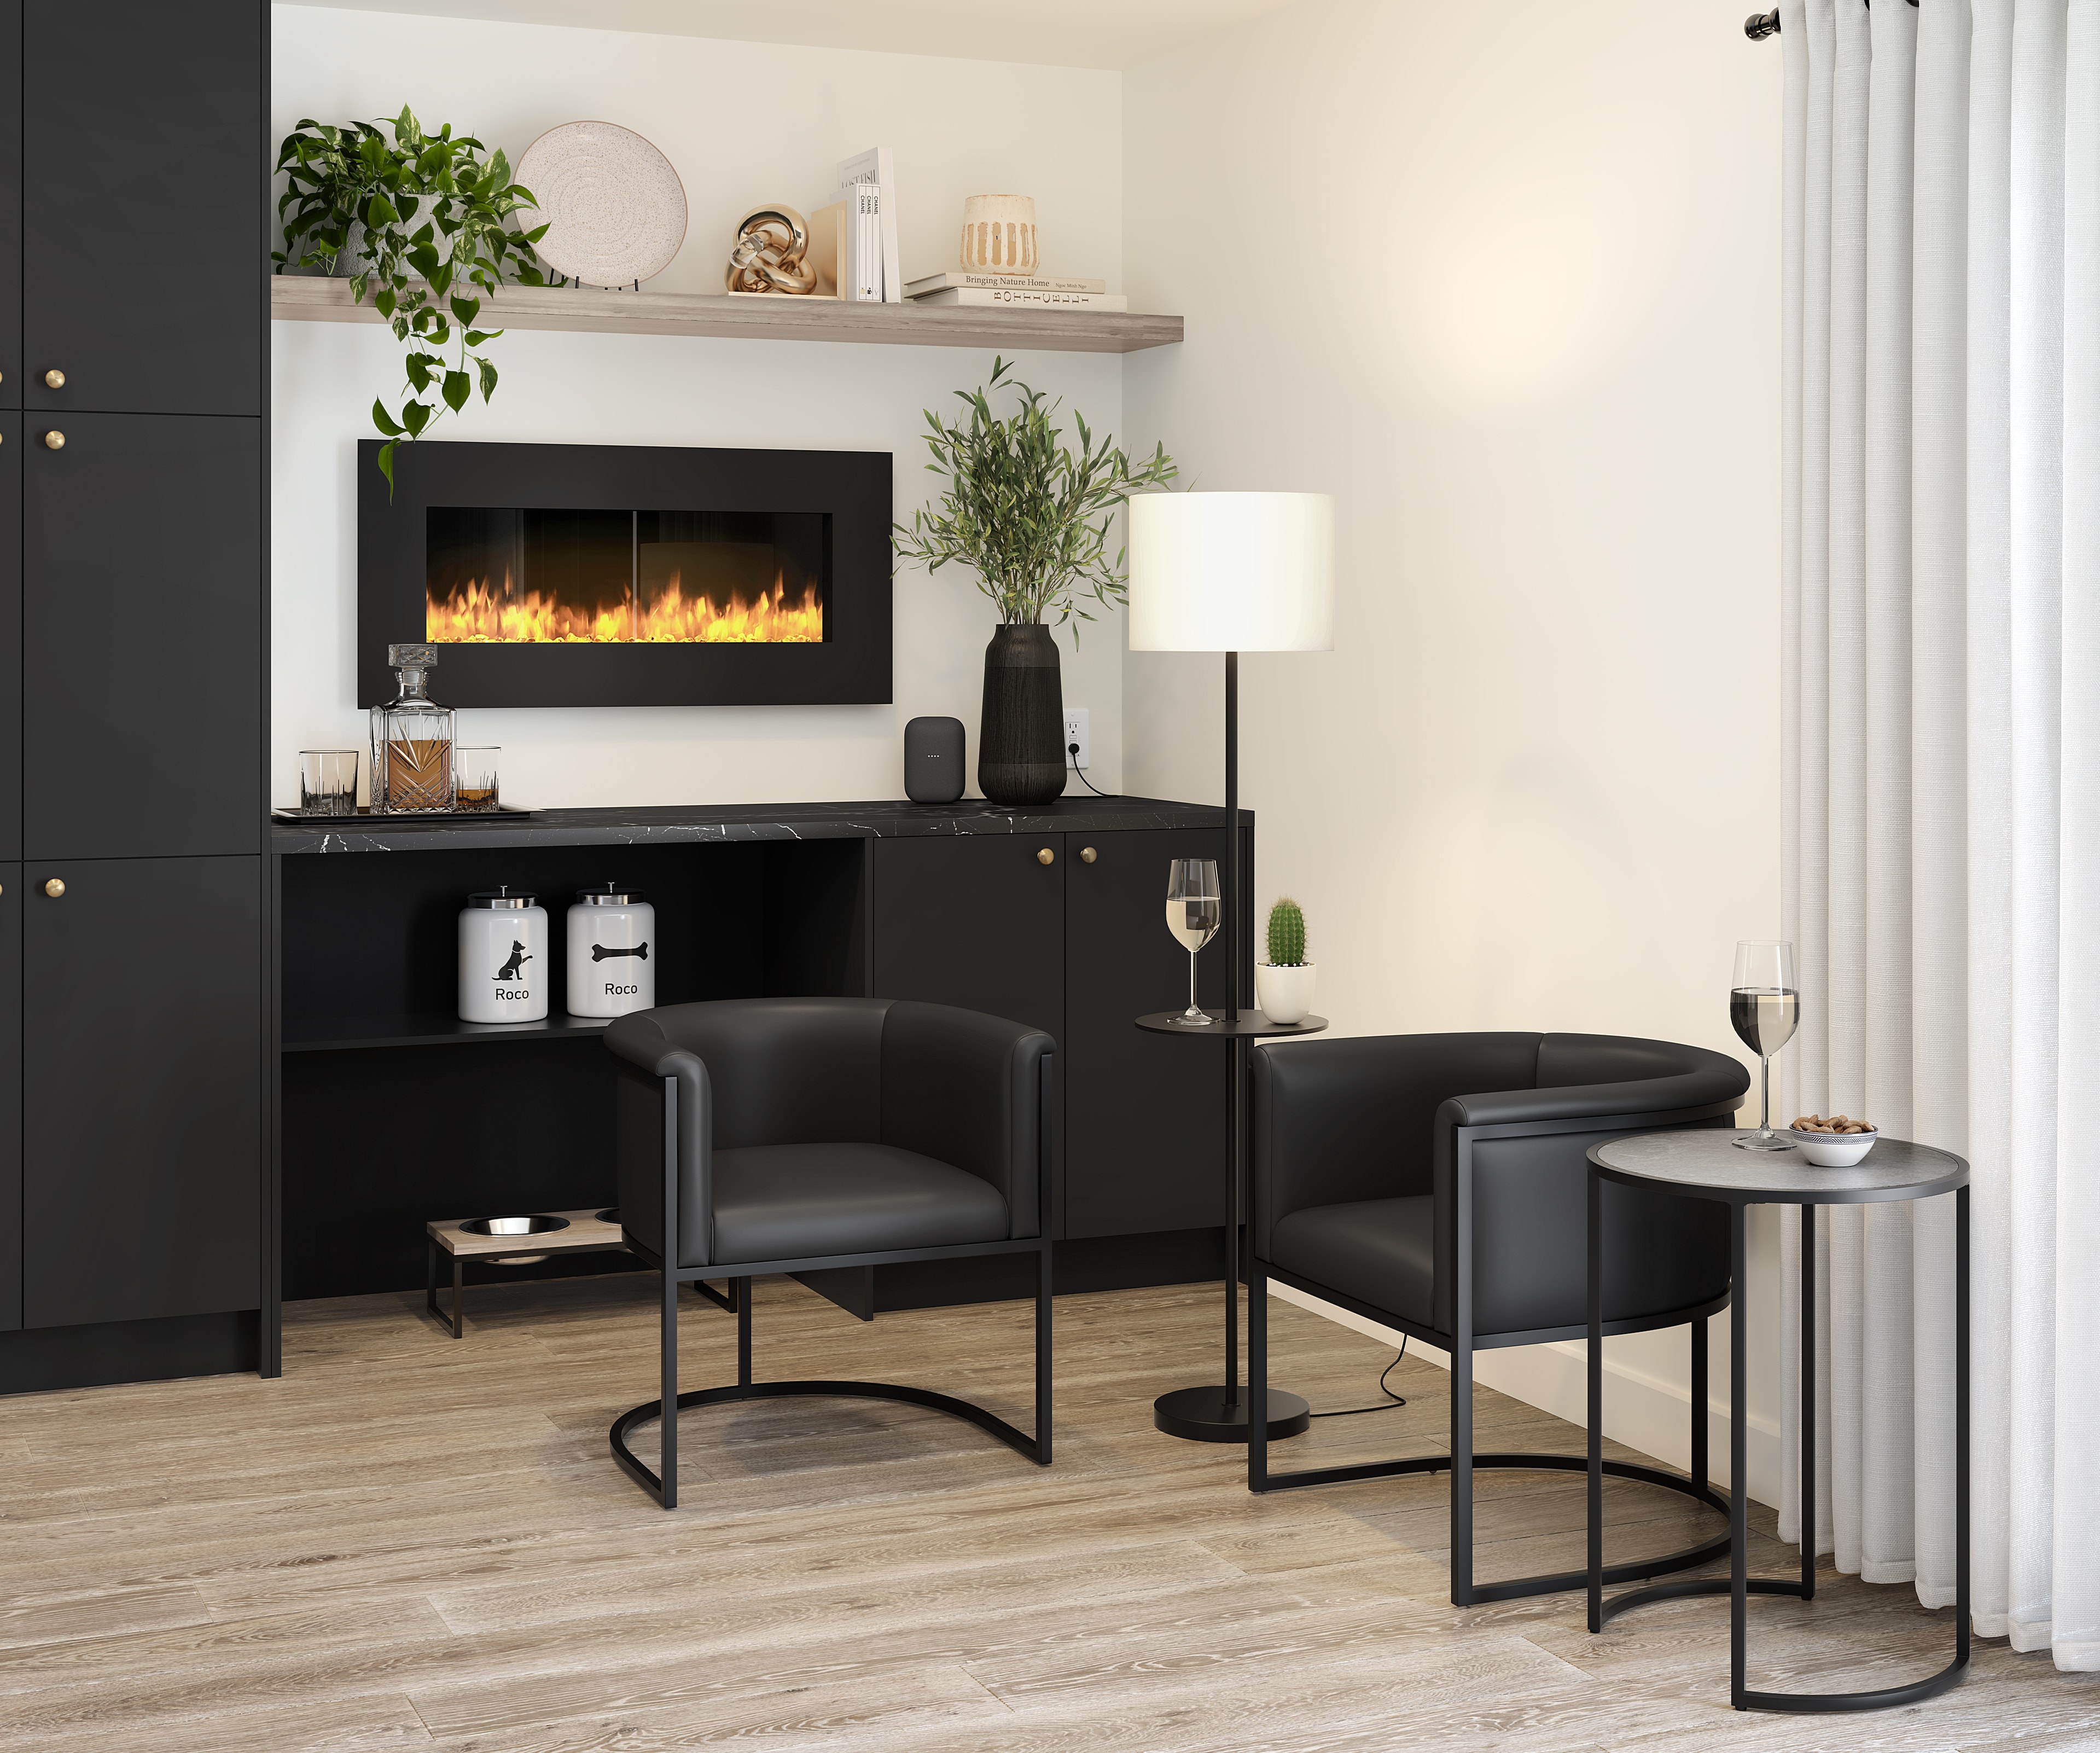 Lounge corner in a modern kitchen